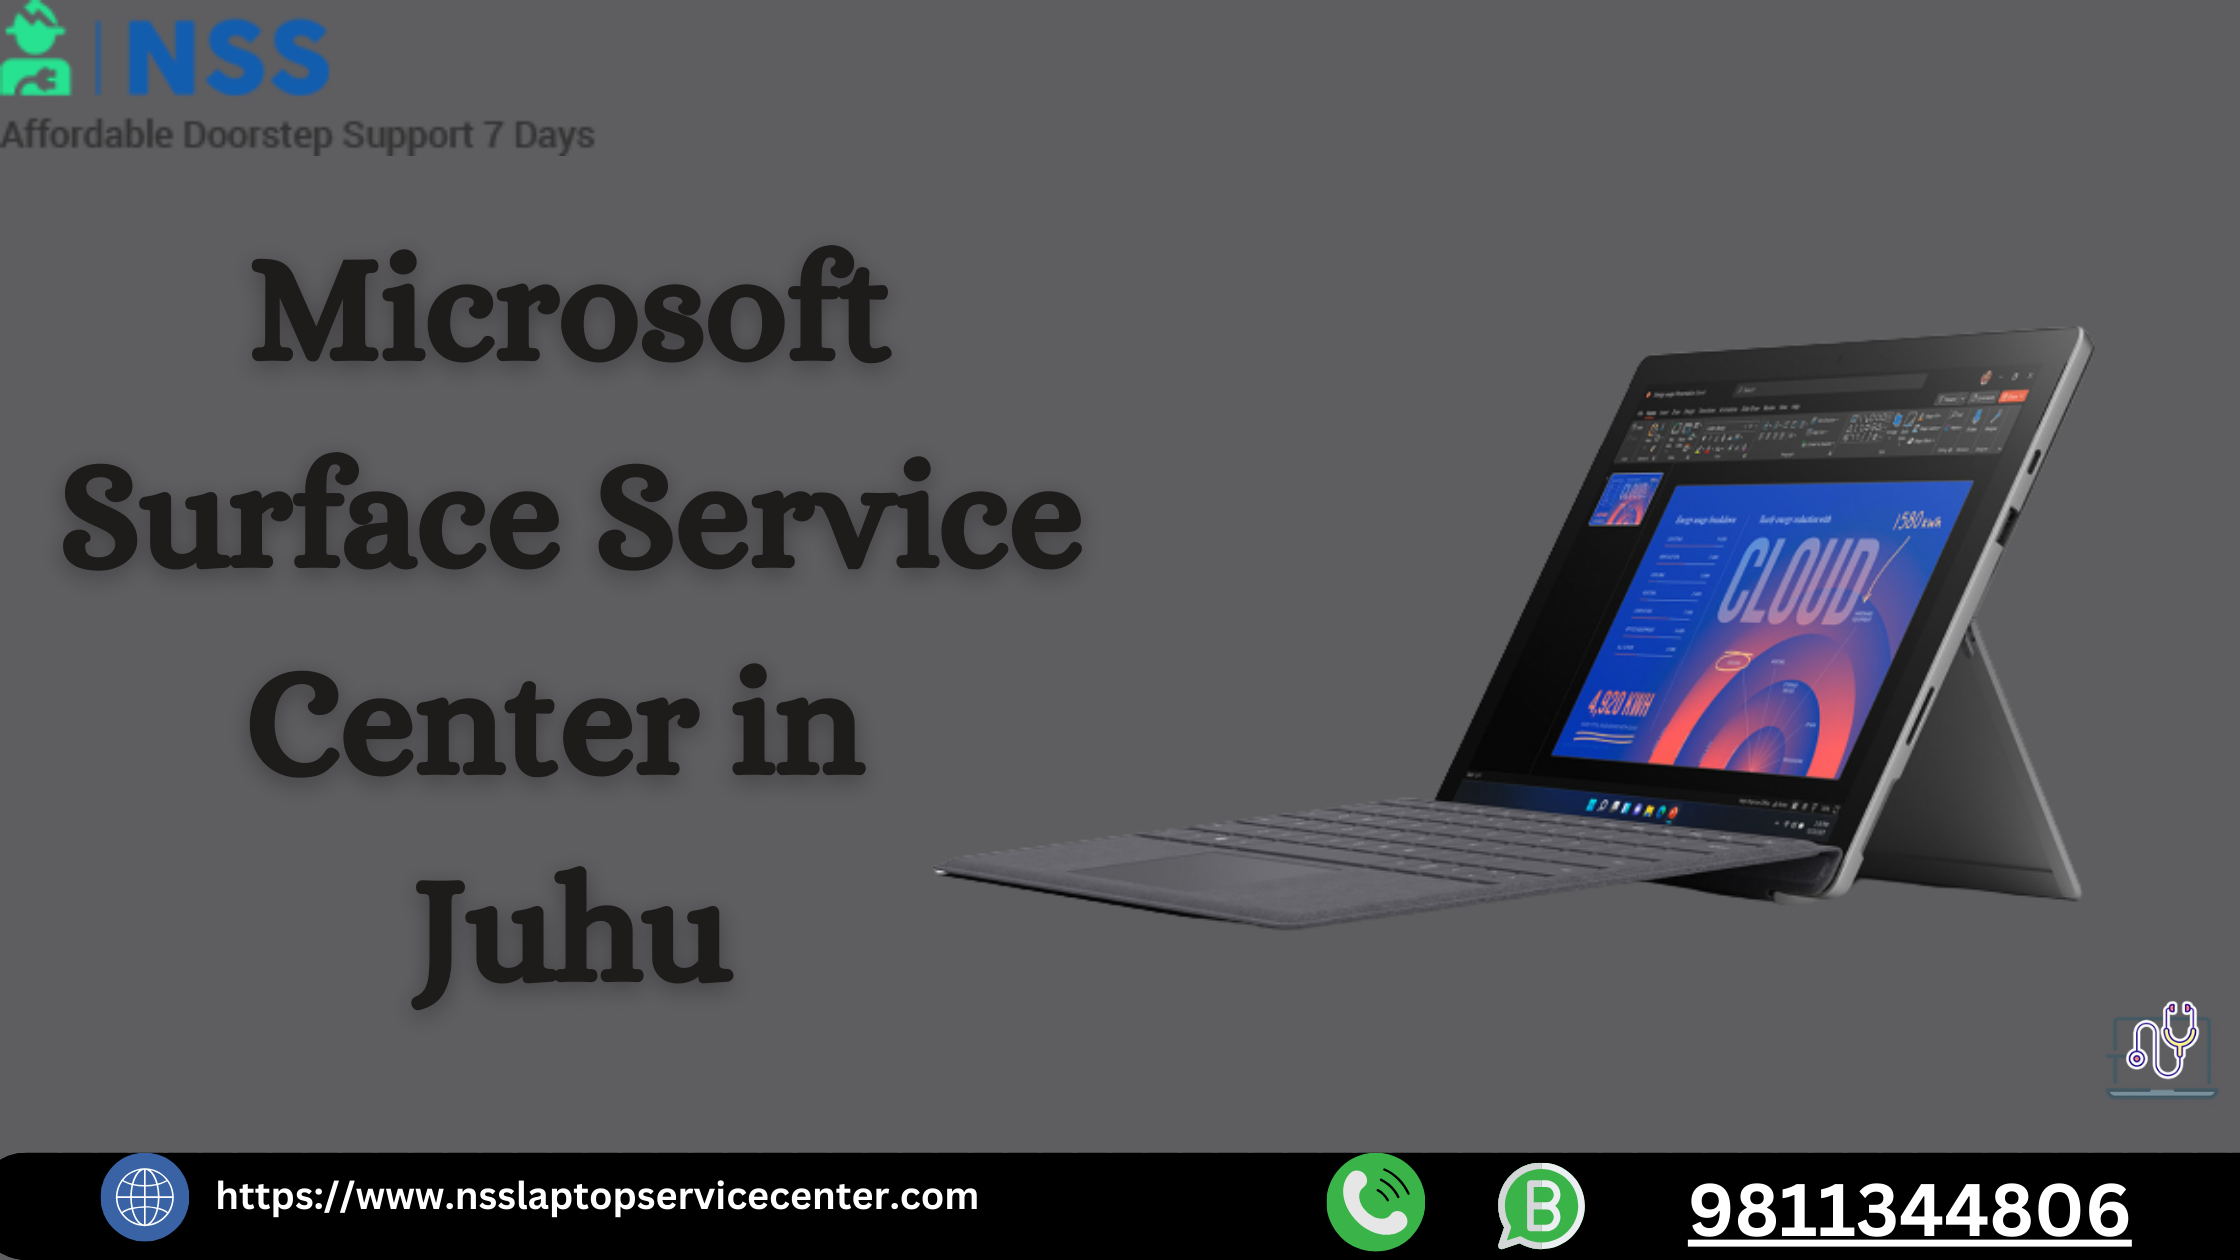 Microsoft Service Center in Juhu Near Mumbai